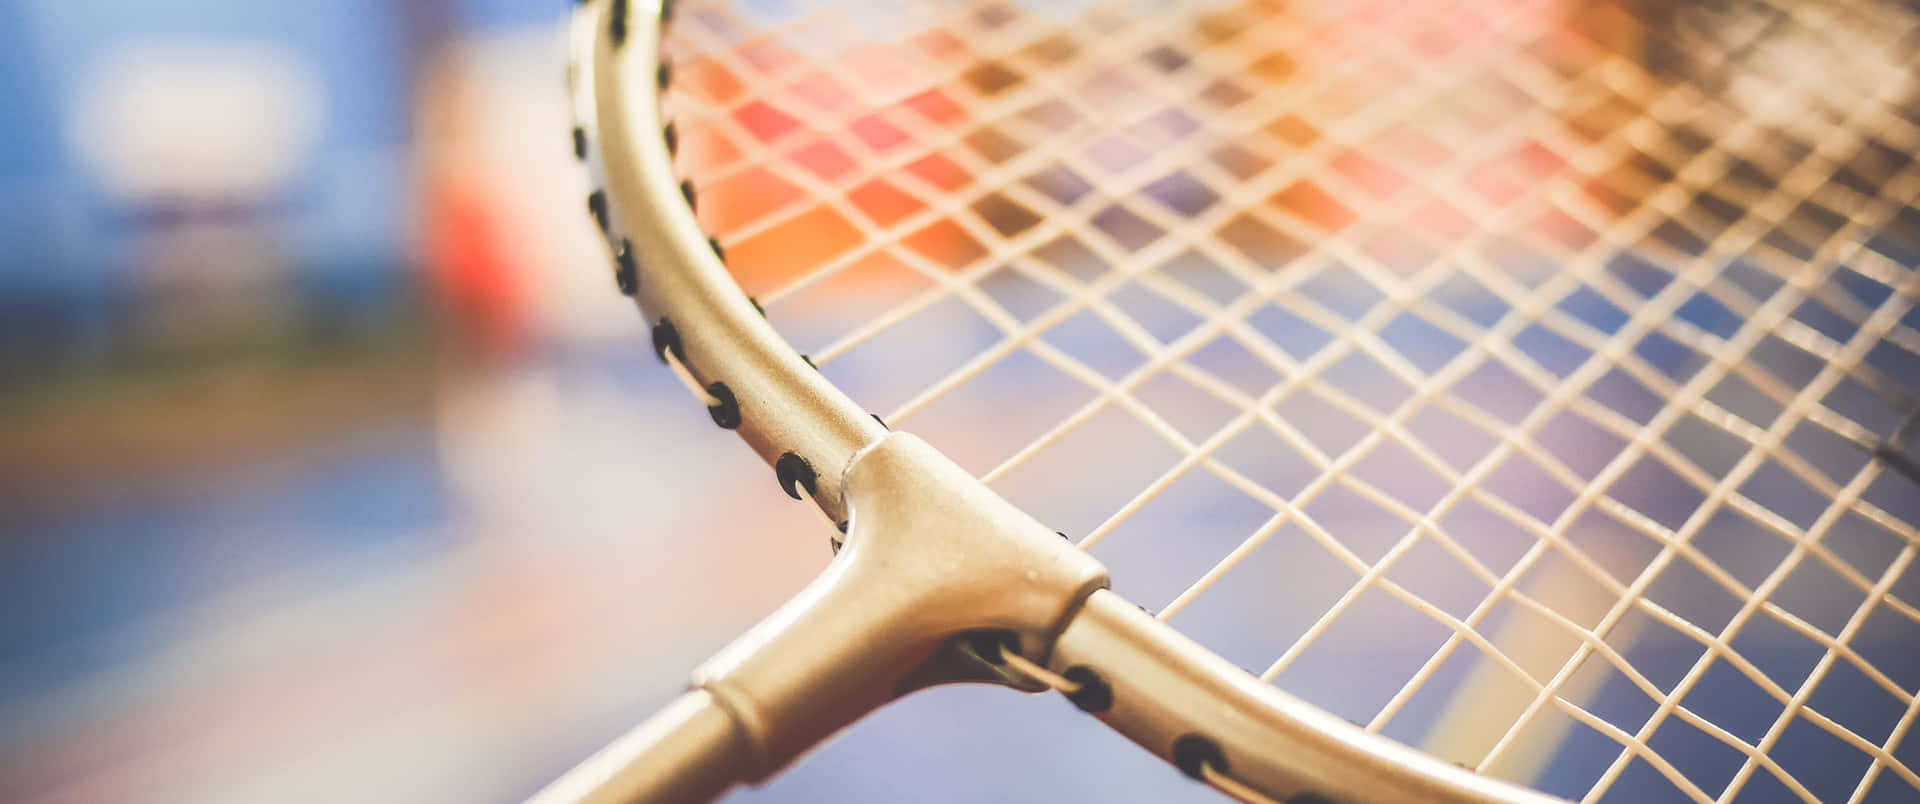 Fantastiskseger: Denna Badminton Bakgrund I 3440x1440p Fångar Perfekt Glädjen Av Att Vinna En Set.